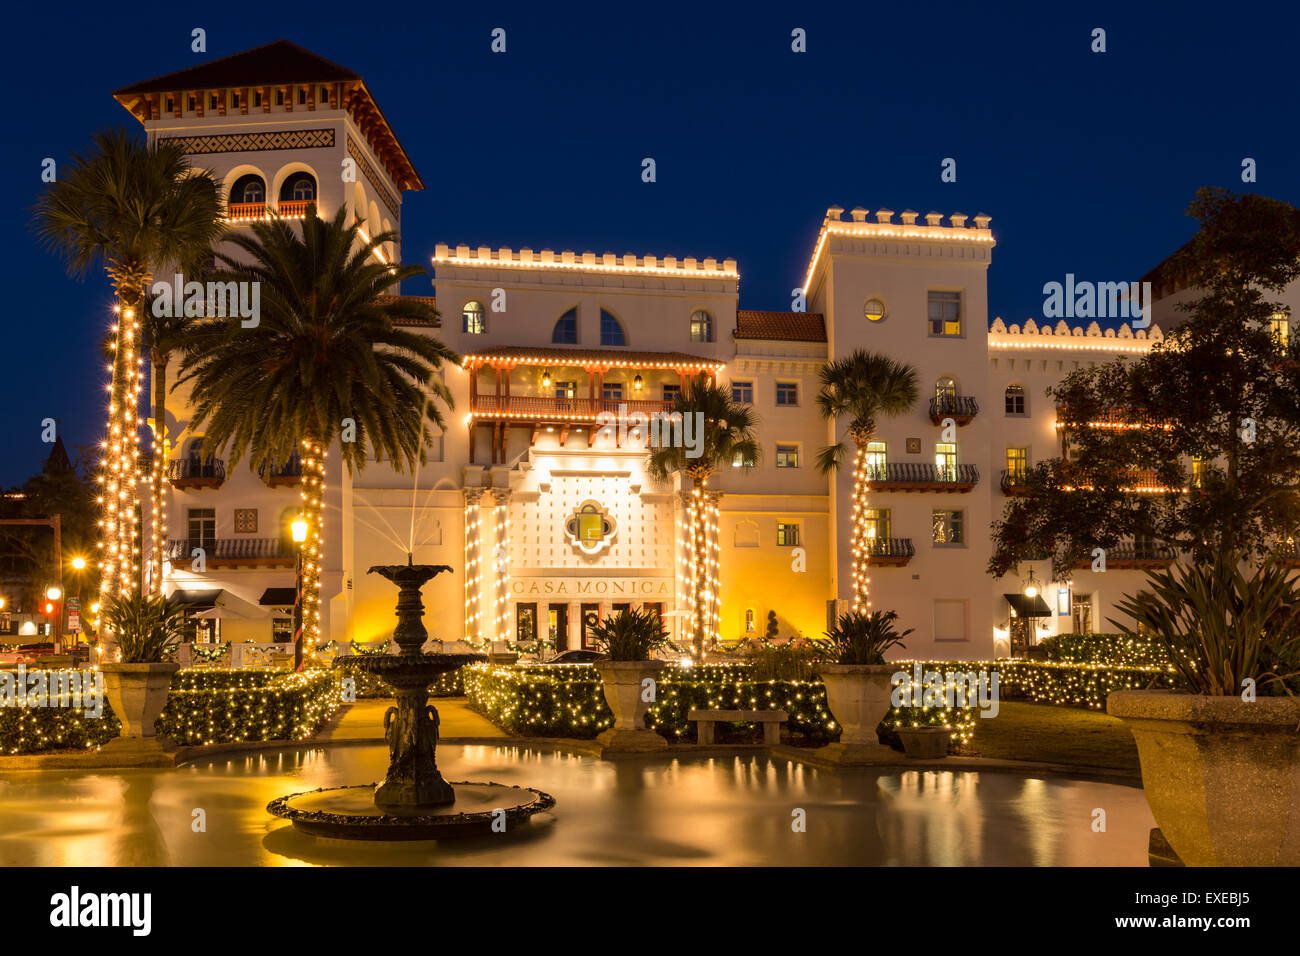 Casa Monica Hotel au crépuscule, Saint Augustine, Floride Banque D'Images